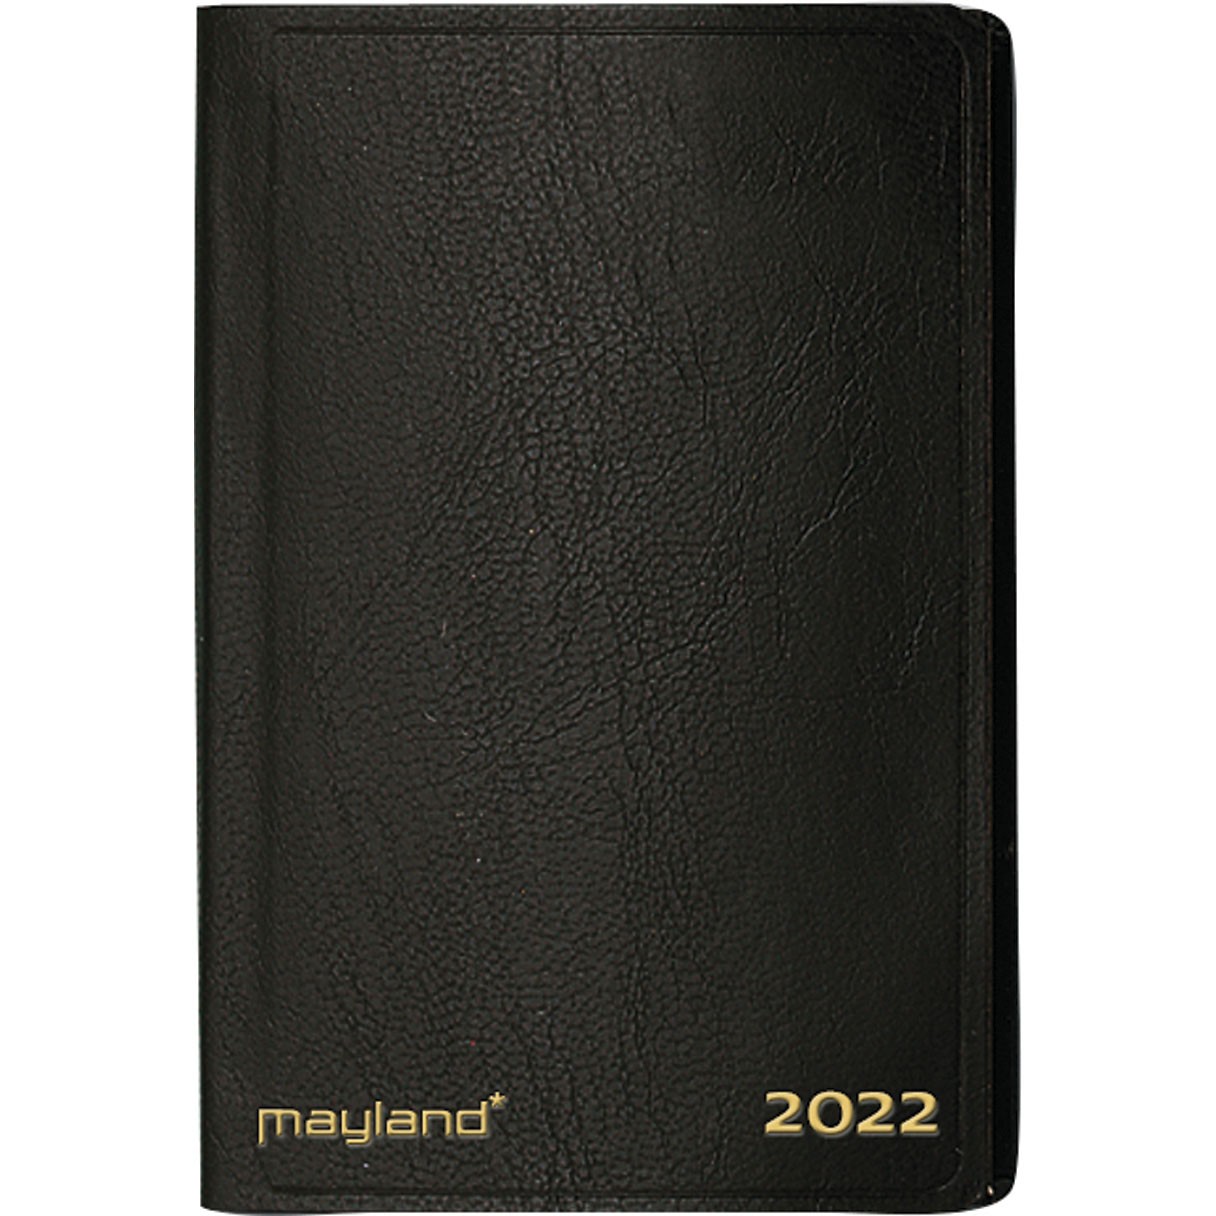 Mayland 2022 22162010 lommeugekalender 12x7,5cm sort